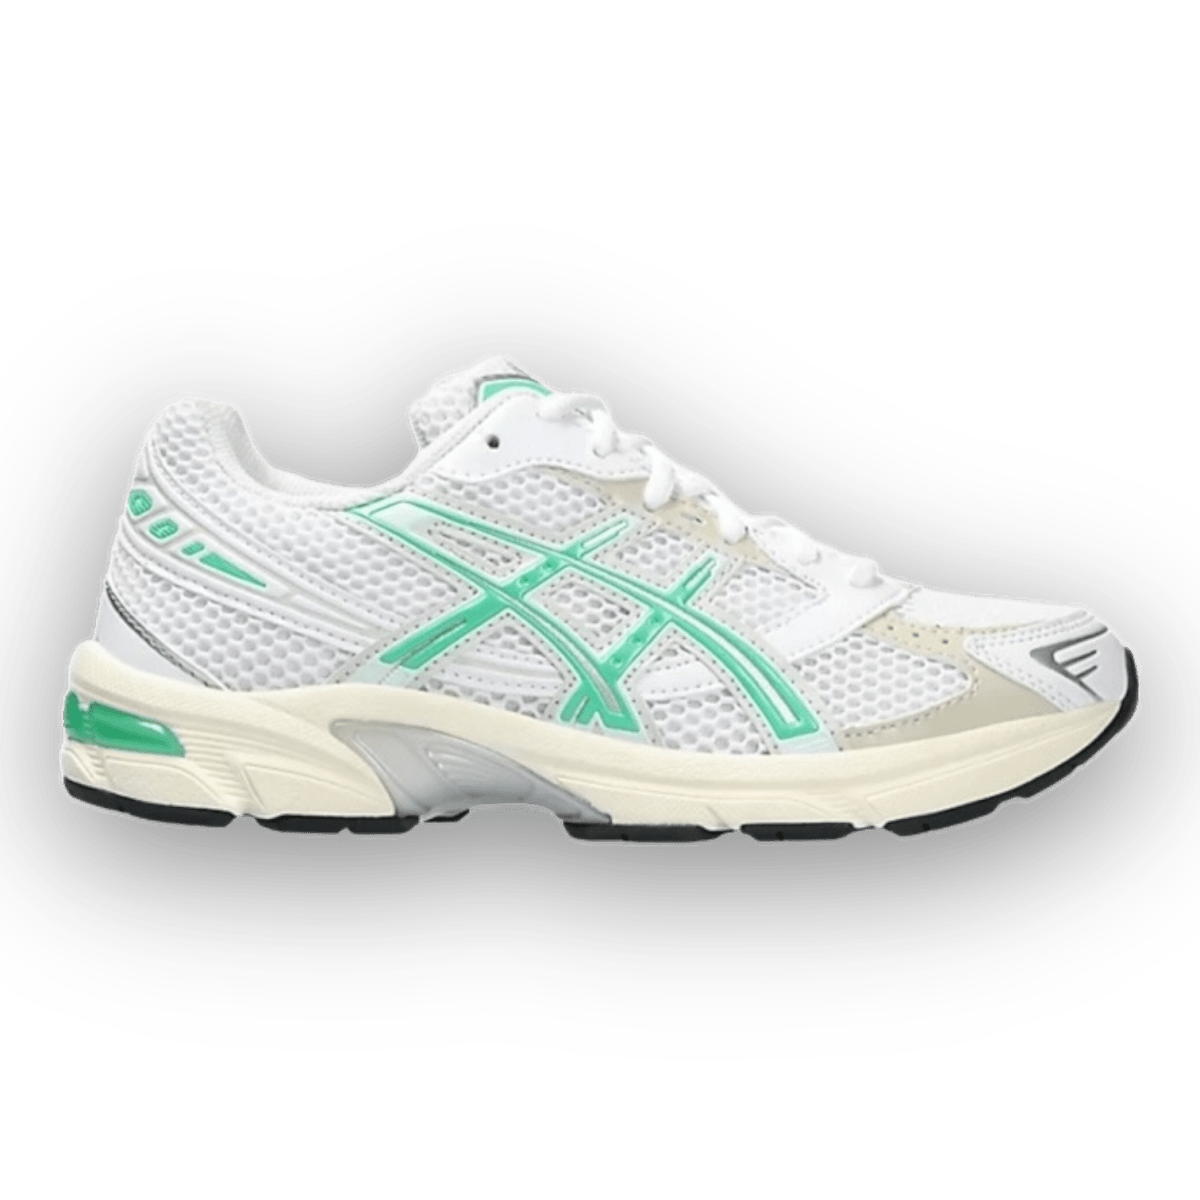 Asics Gel 1130 White Malachite Green - Women - Low Sneaker - Jawns on Fire Sneakers & Streetwear